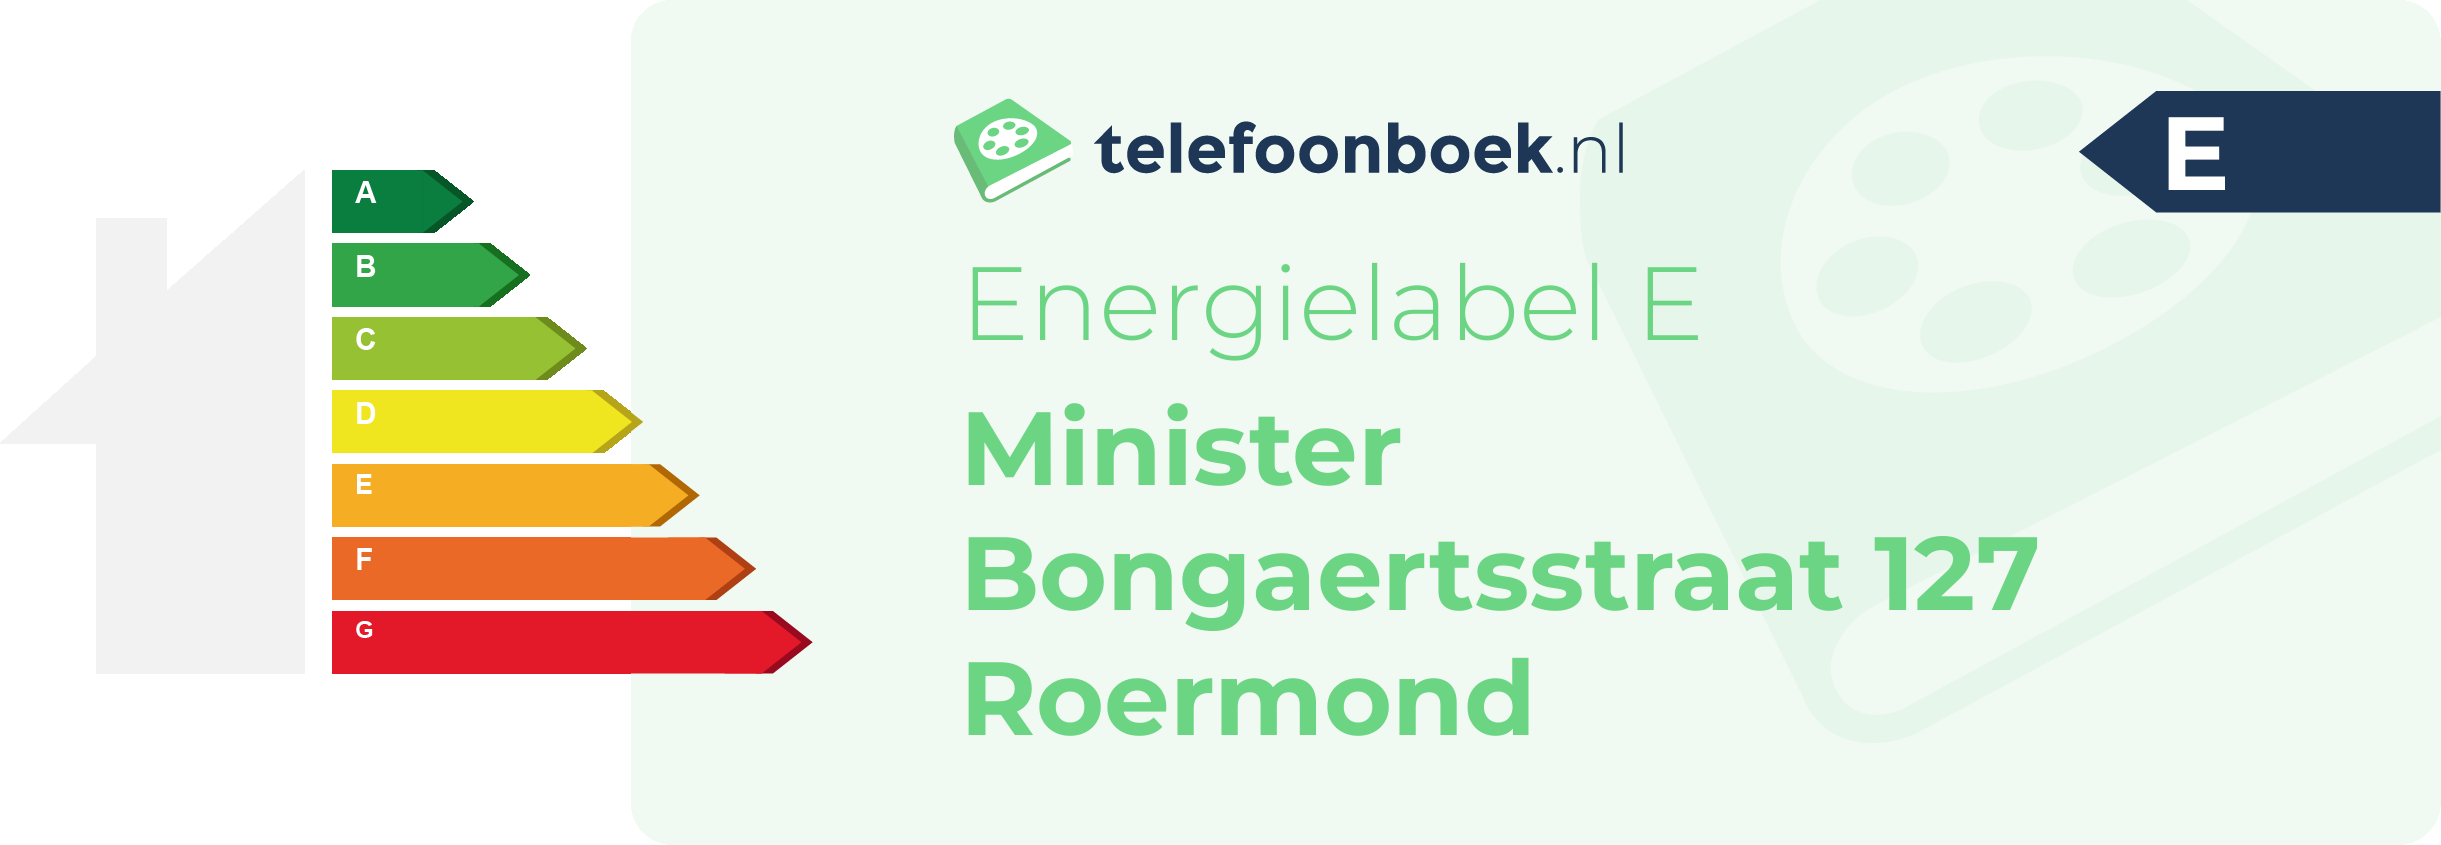 Energielabel Minister Bongaertsstraat 127 Roermond